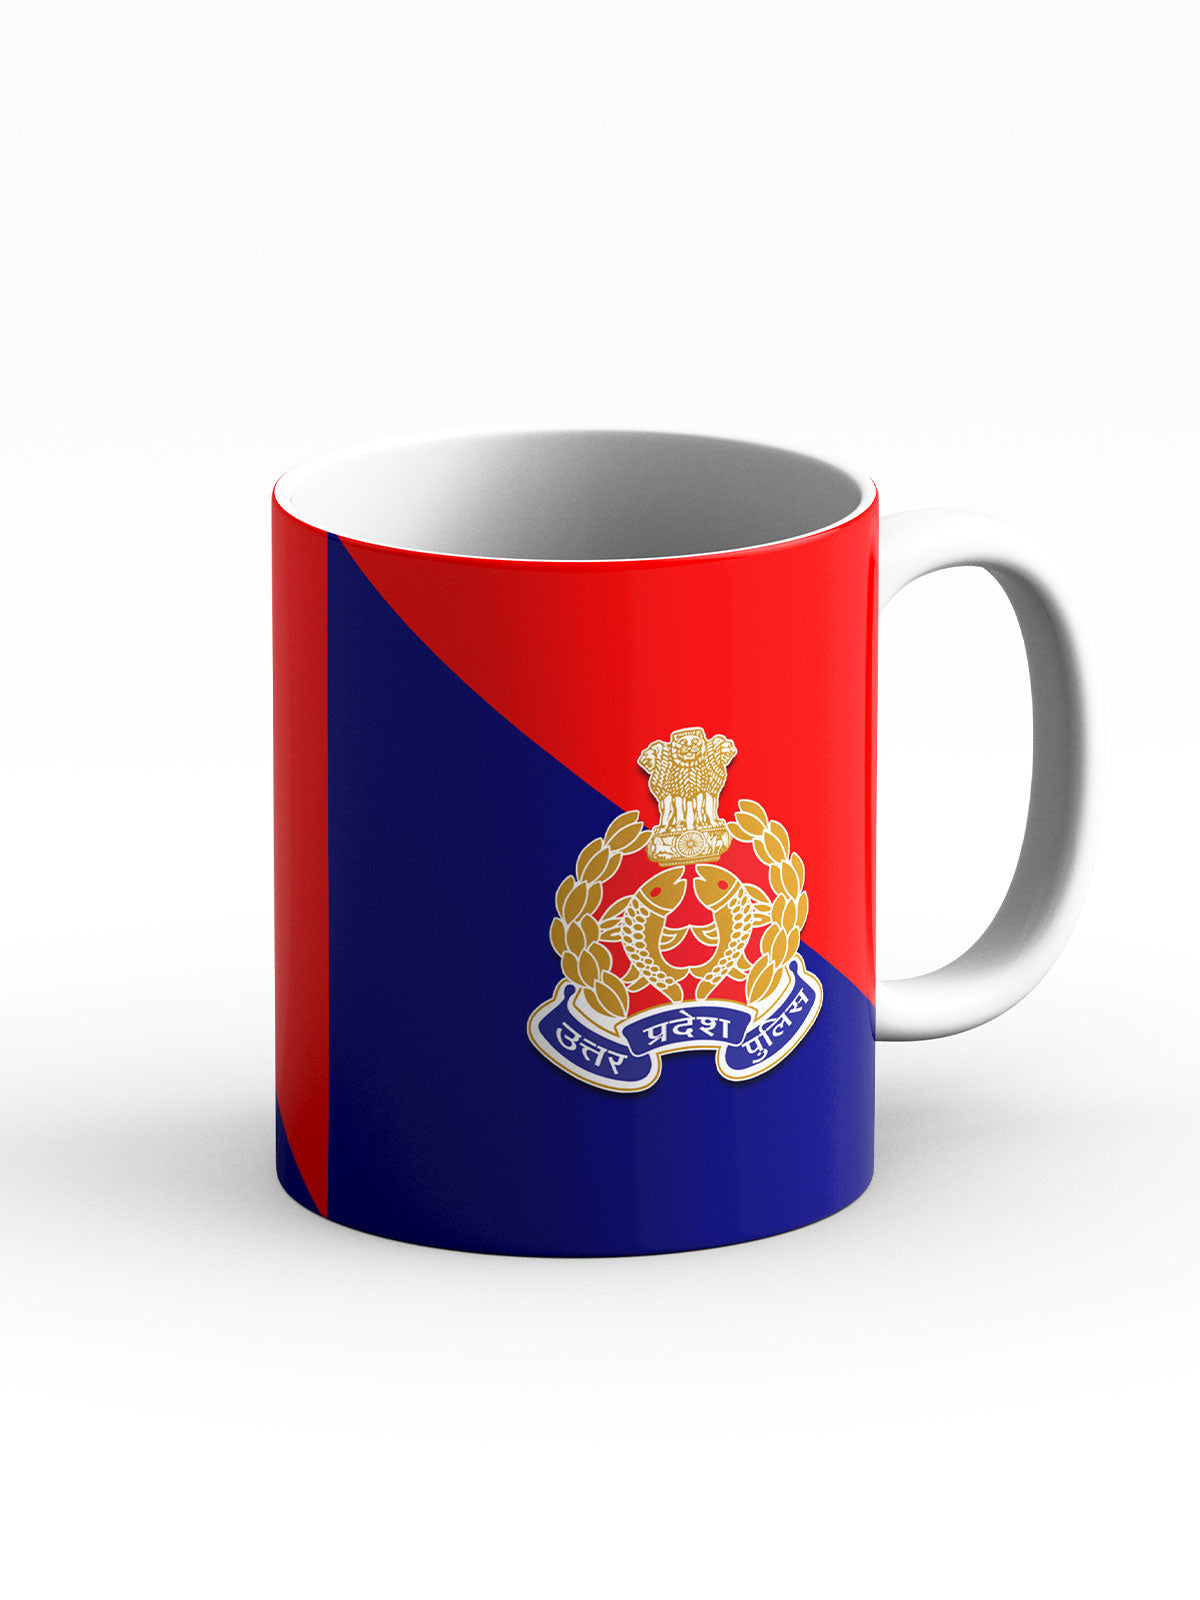 UP Police Coffee Mug